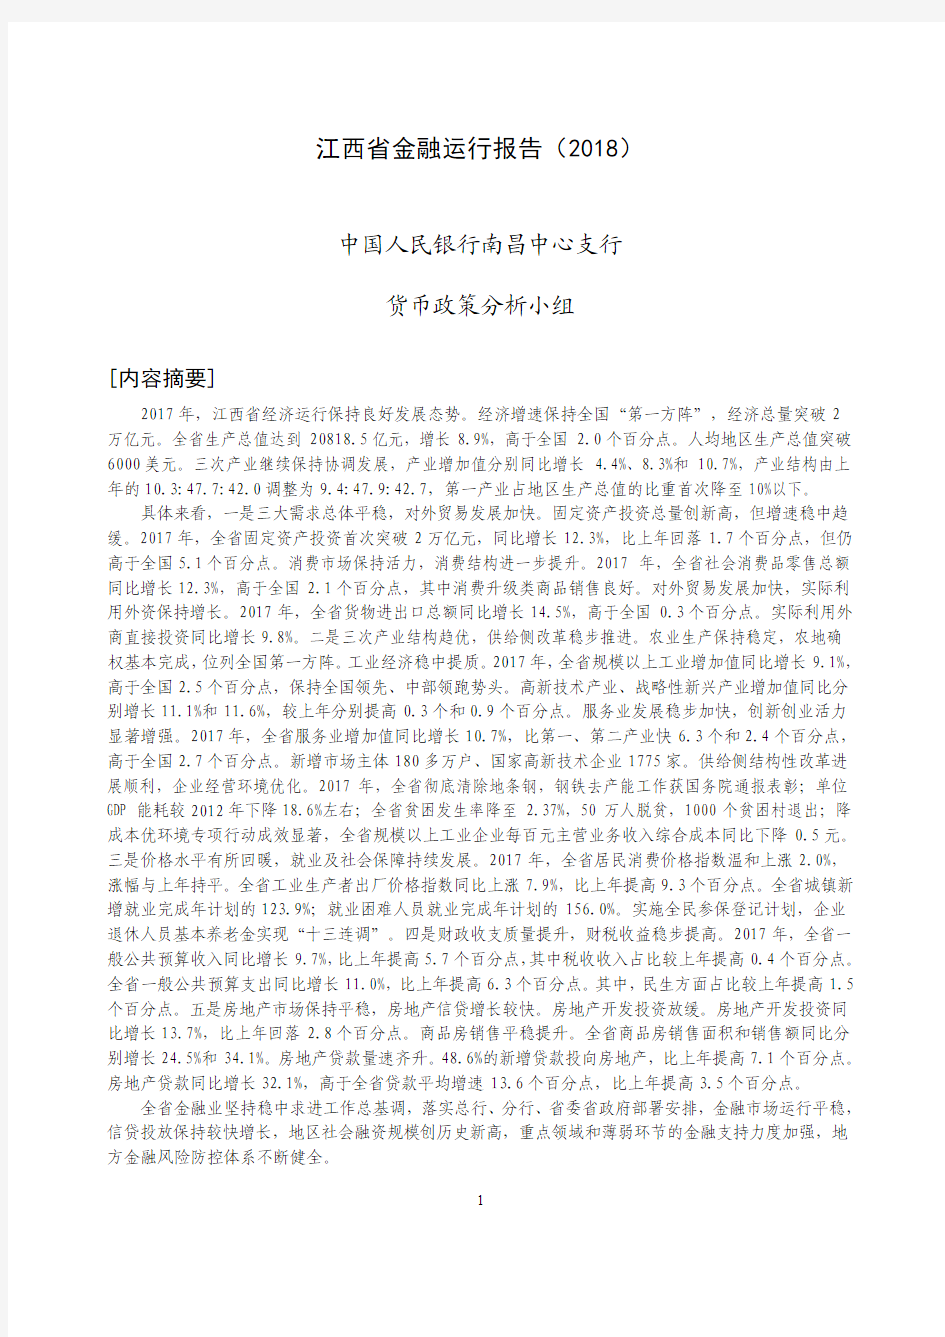 《江西省金融运行报告(2018)》